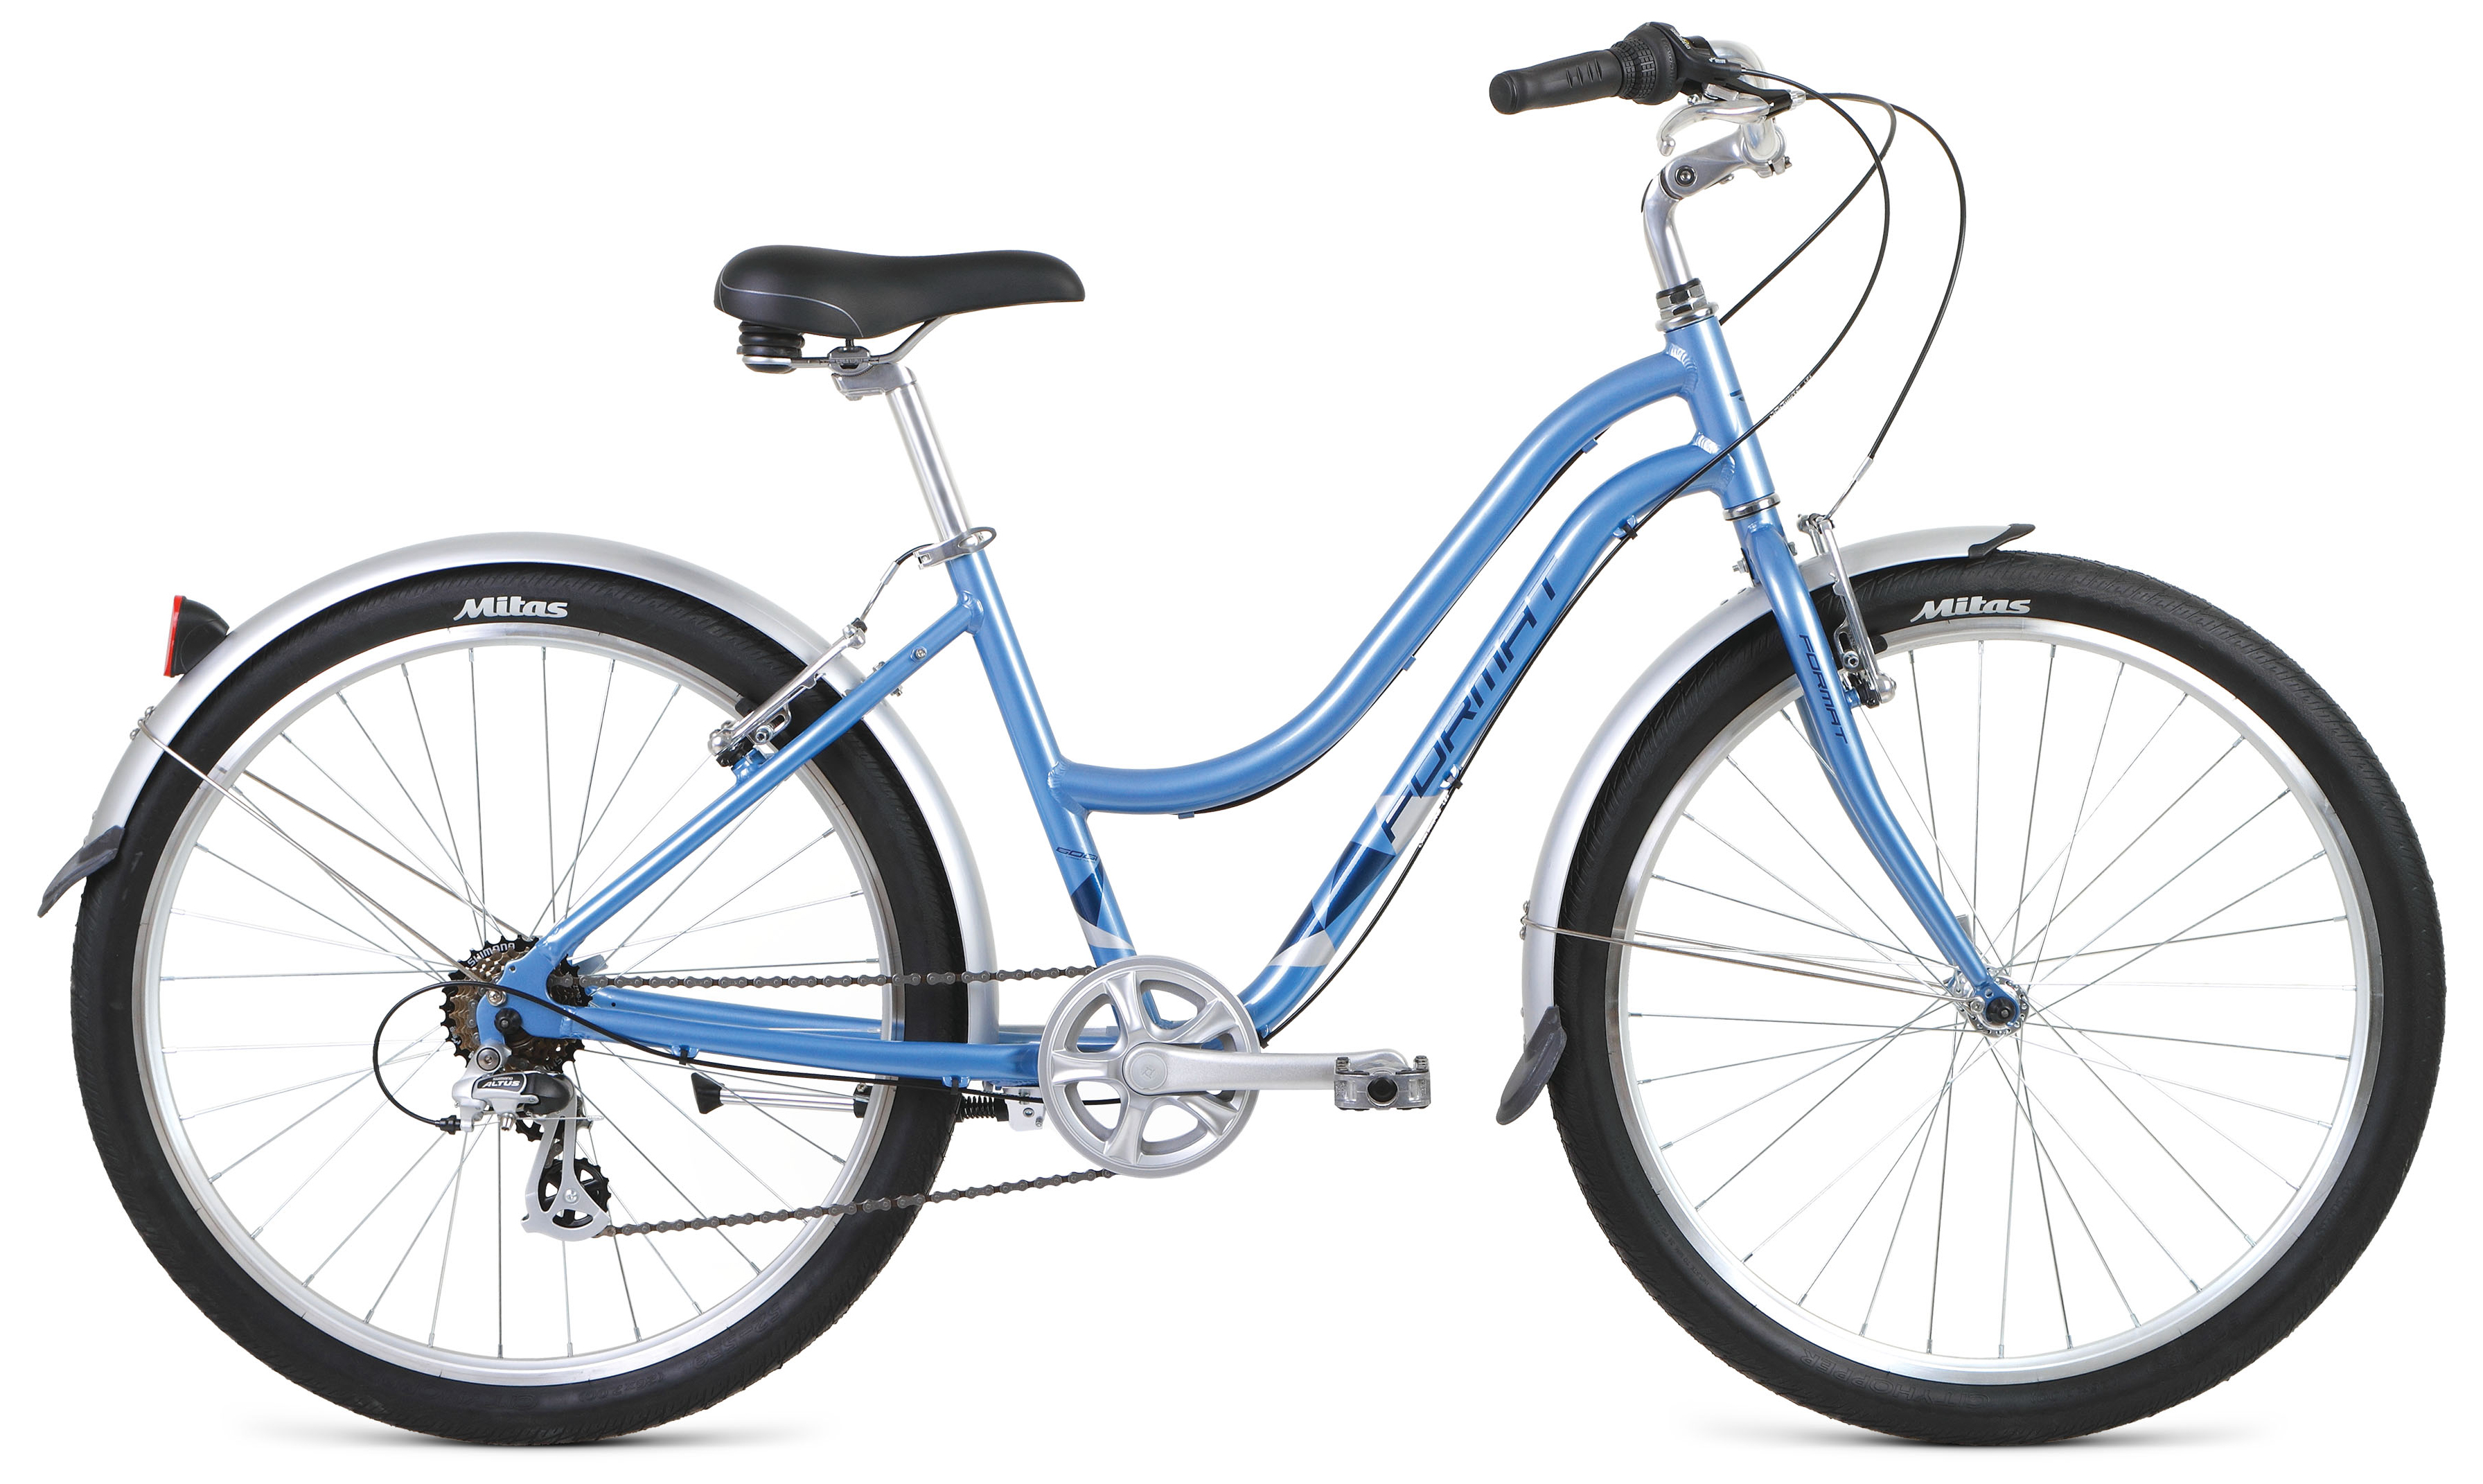  Отзывы о Женском велосипеде Format 7733 2020